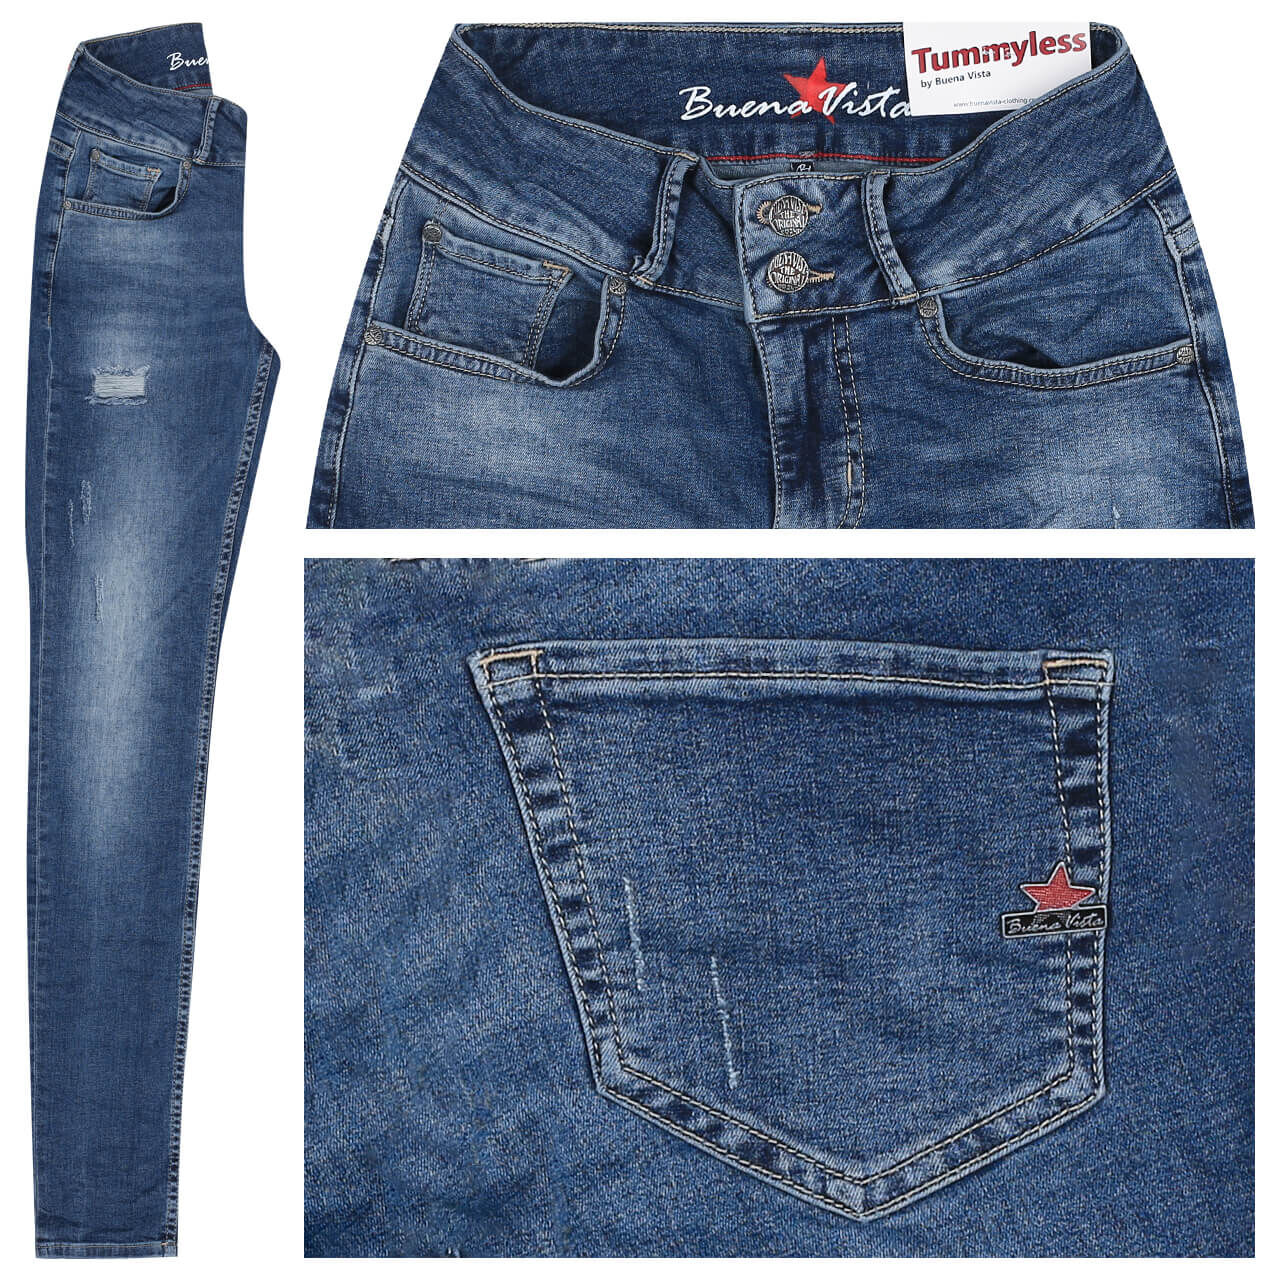 Buena Vista Jeans Tummyless Stretch Denim für Damen in Blau verwaschen mit Destroyed-Effekten, FarbNr.: 2502